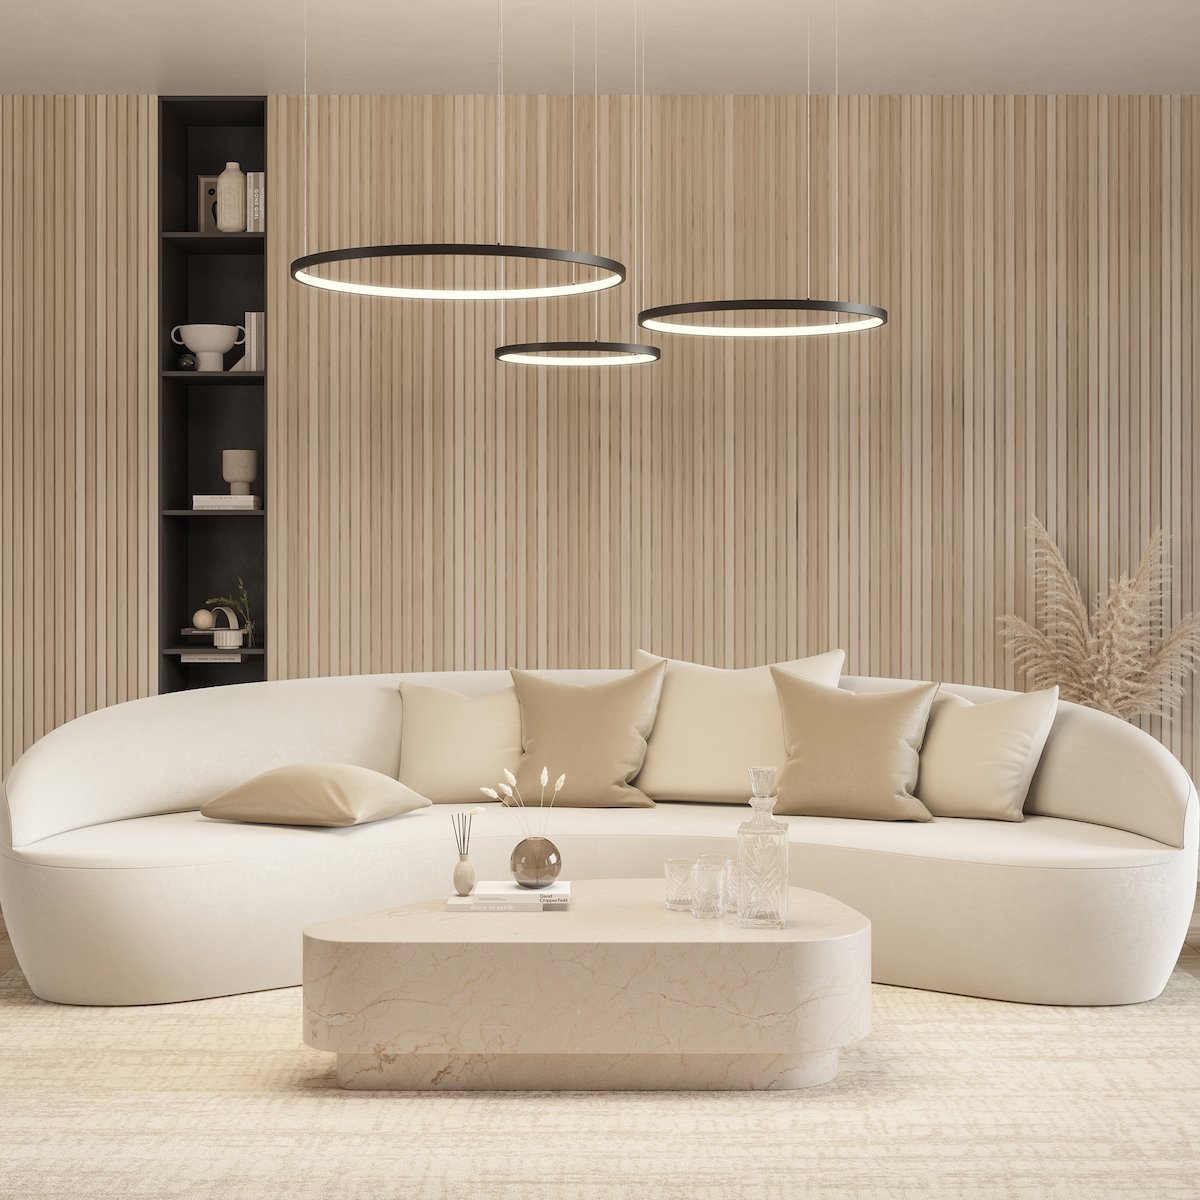 Ring LED Deckenleuchte dimmbar für Wohn & Esszimmer – Neona